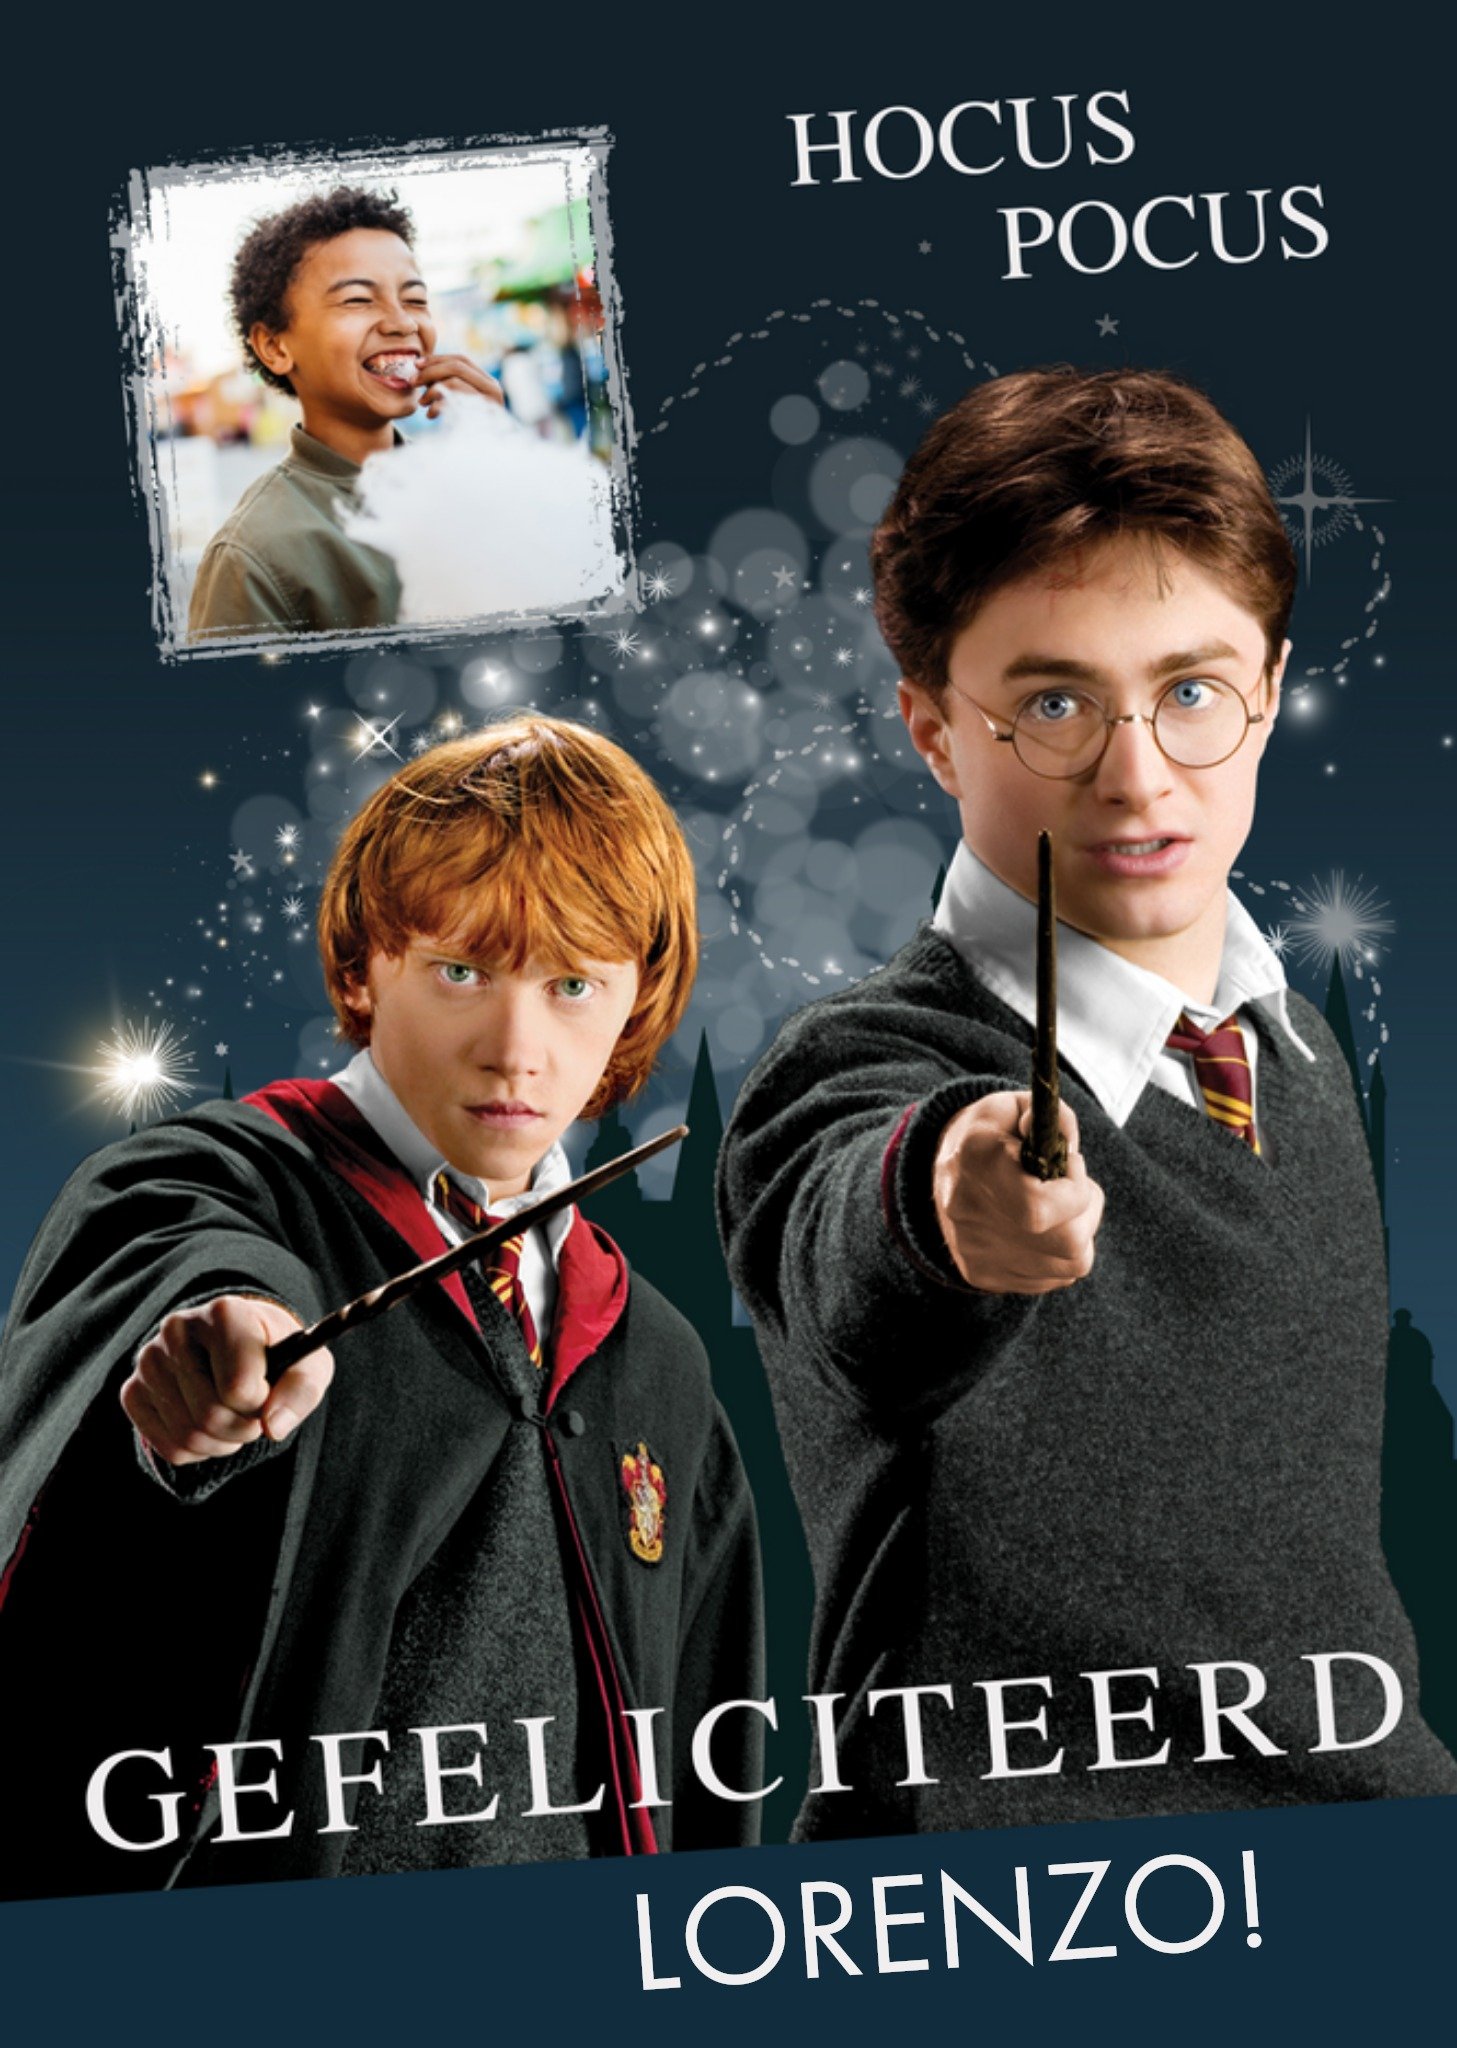 Harry Potter - Verjaardagskaart - Hocus Pocus